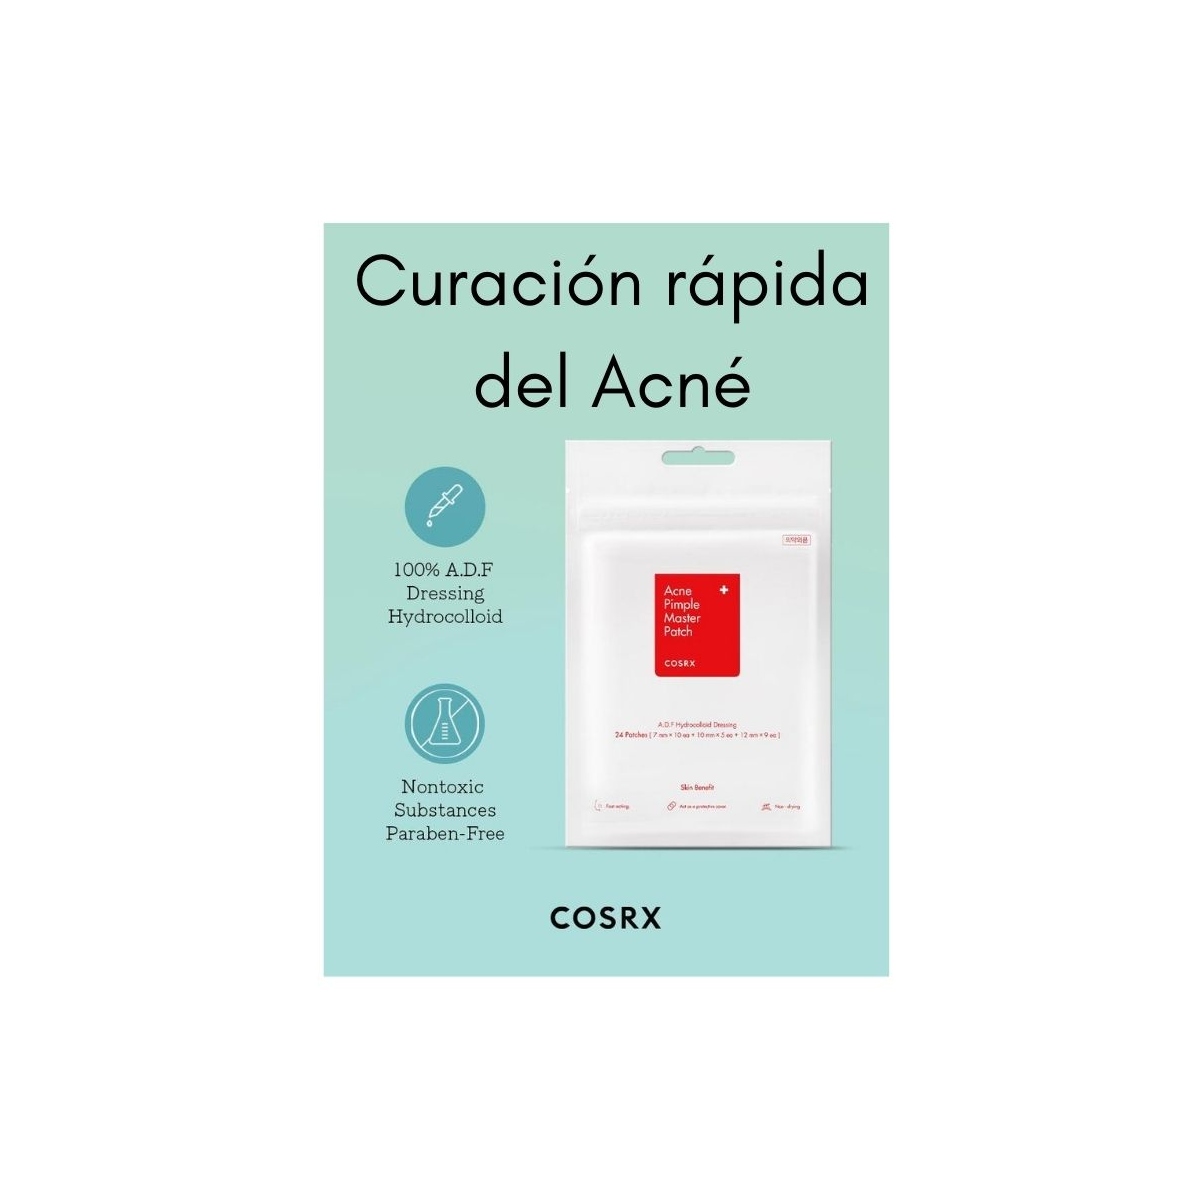 Cosmética Coreana al mejor precio: Parche Anti Acné COSRX Acne Pimple Master Patch de Cosrx en Skin Thinks - Piel Grasa